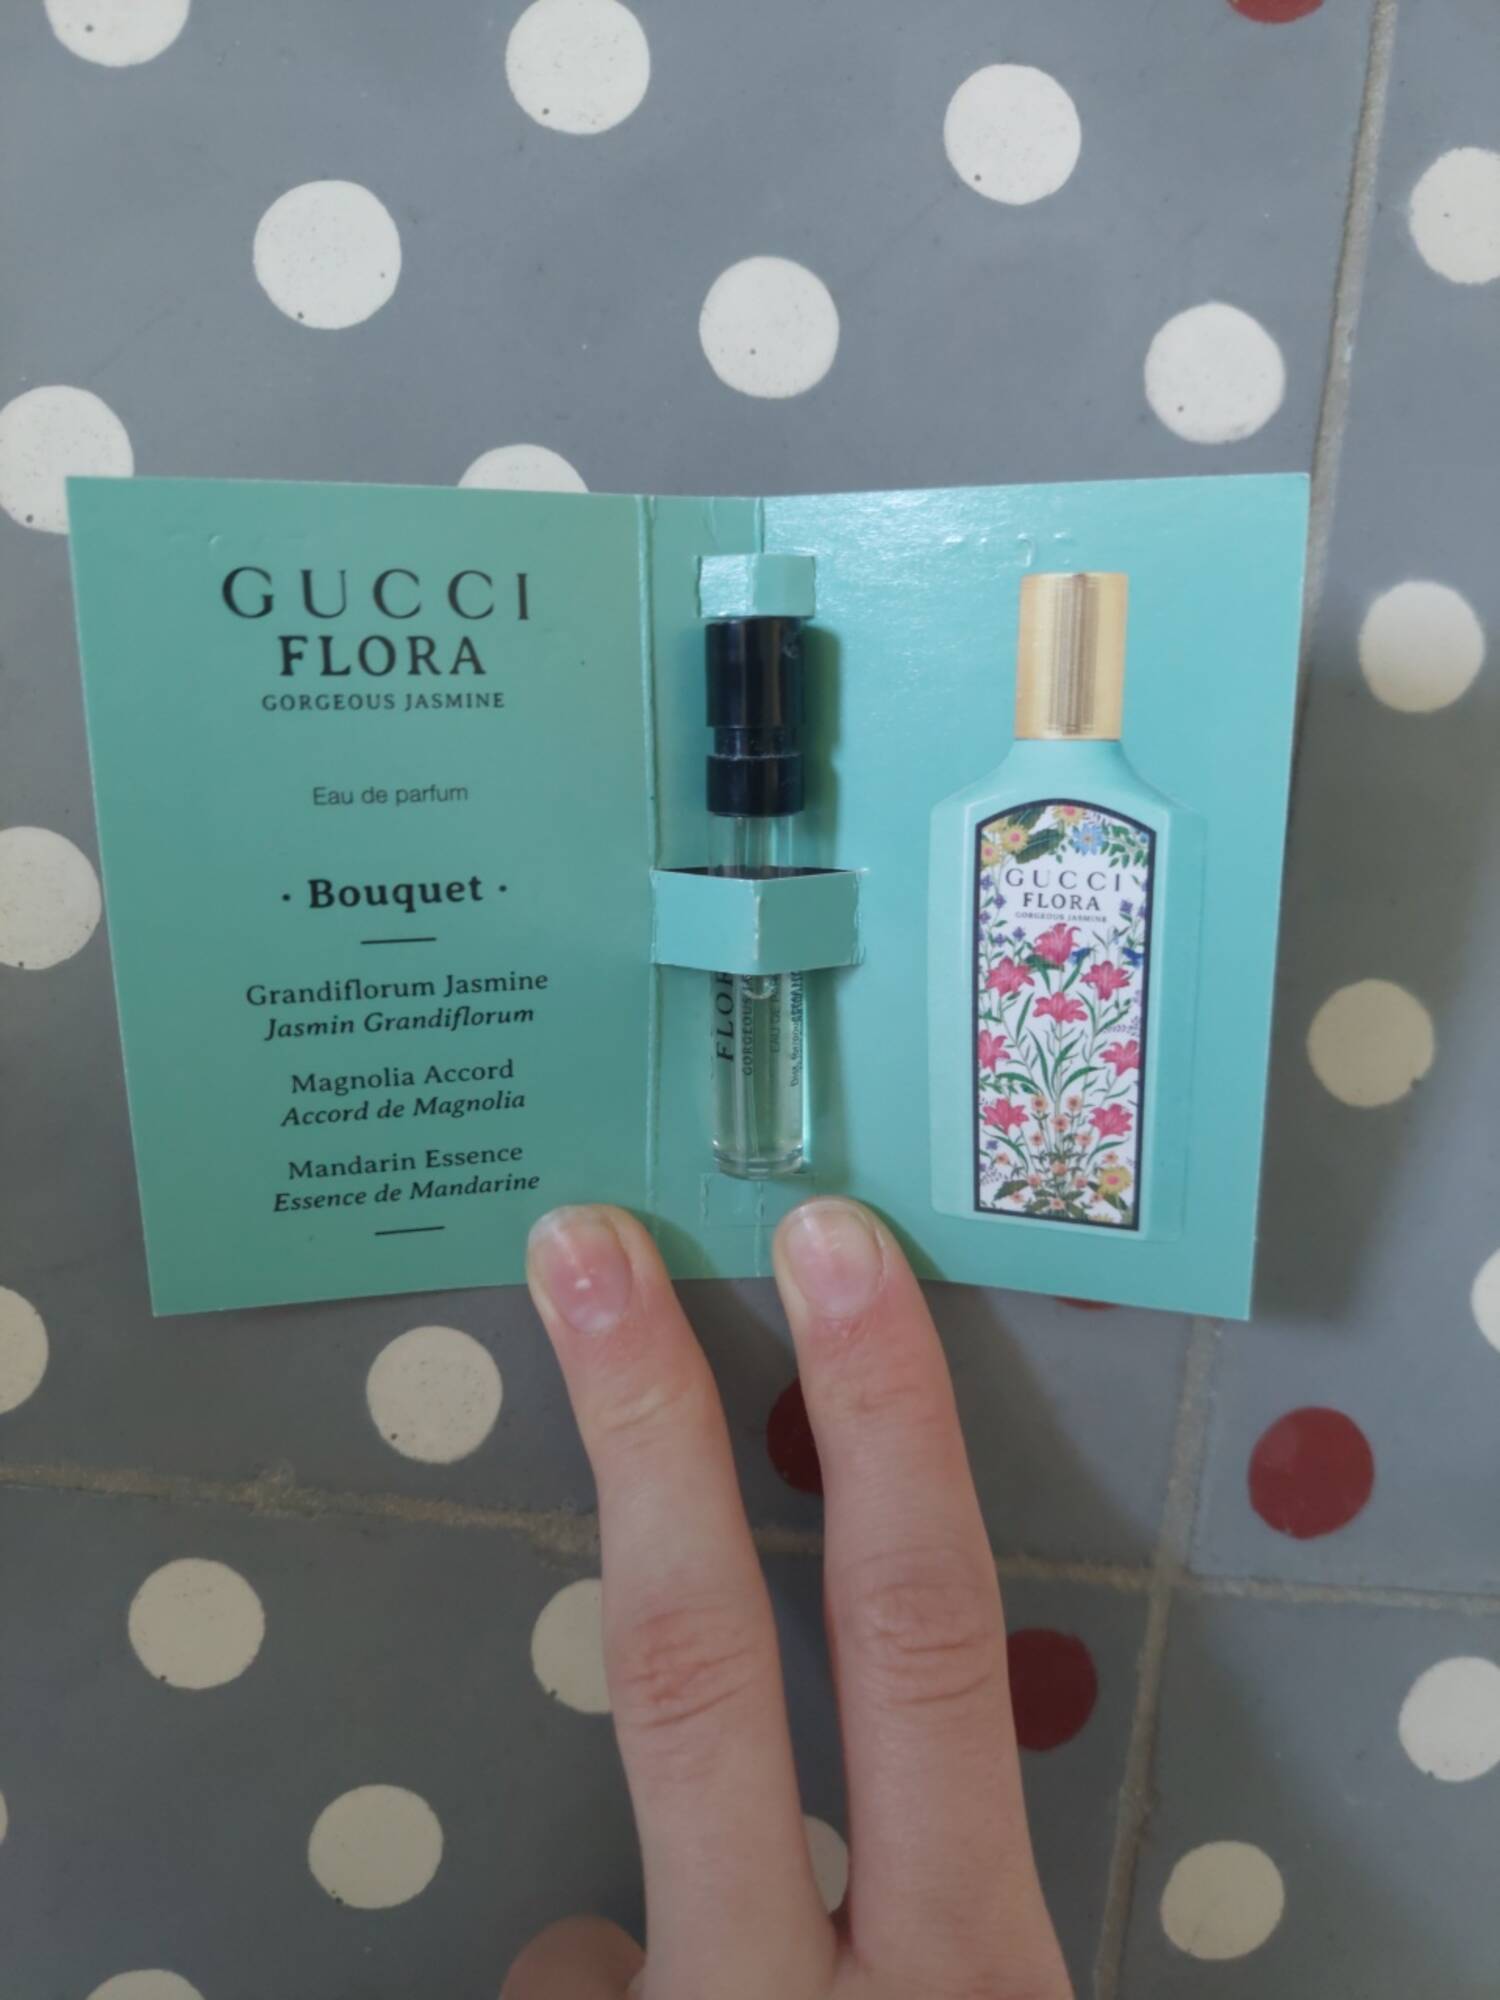 GUCCI - Flora Gorgeous Jasmine - Eau de parfum bouquet 